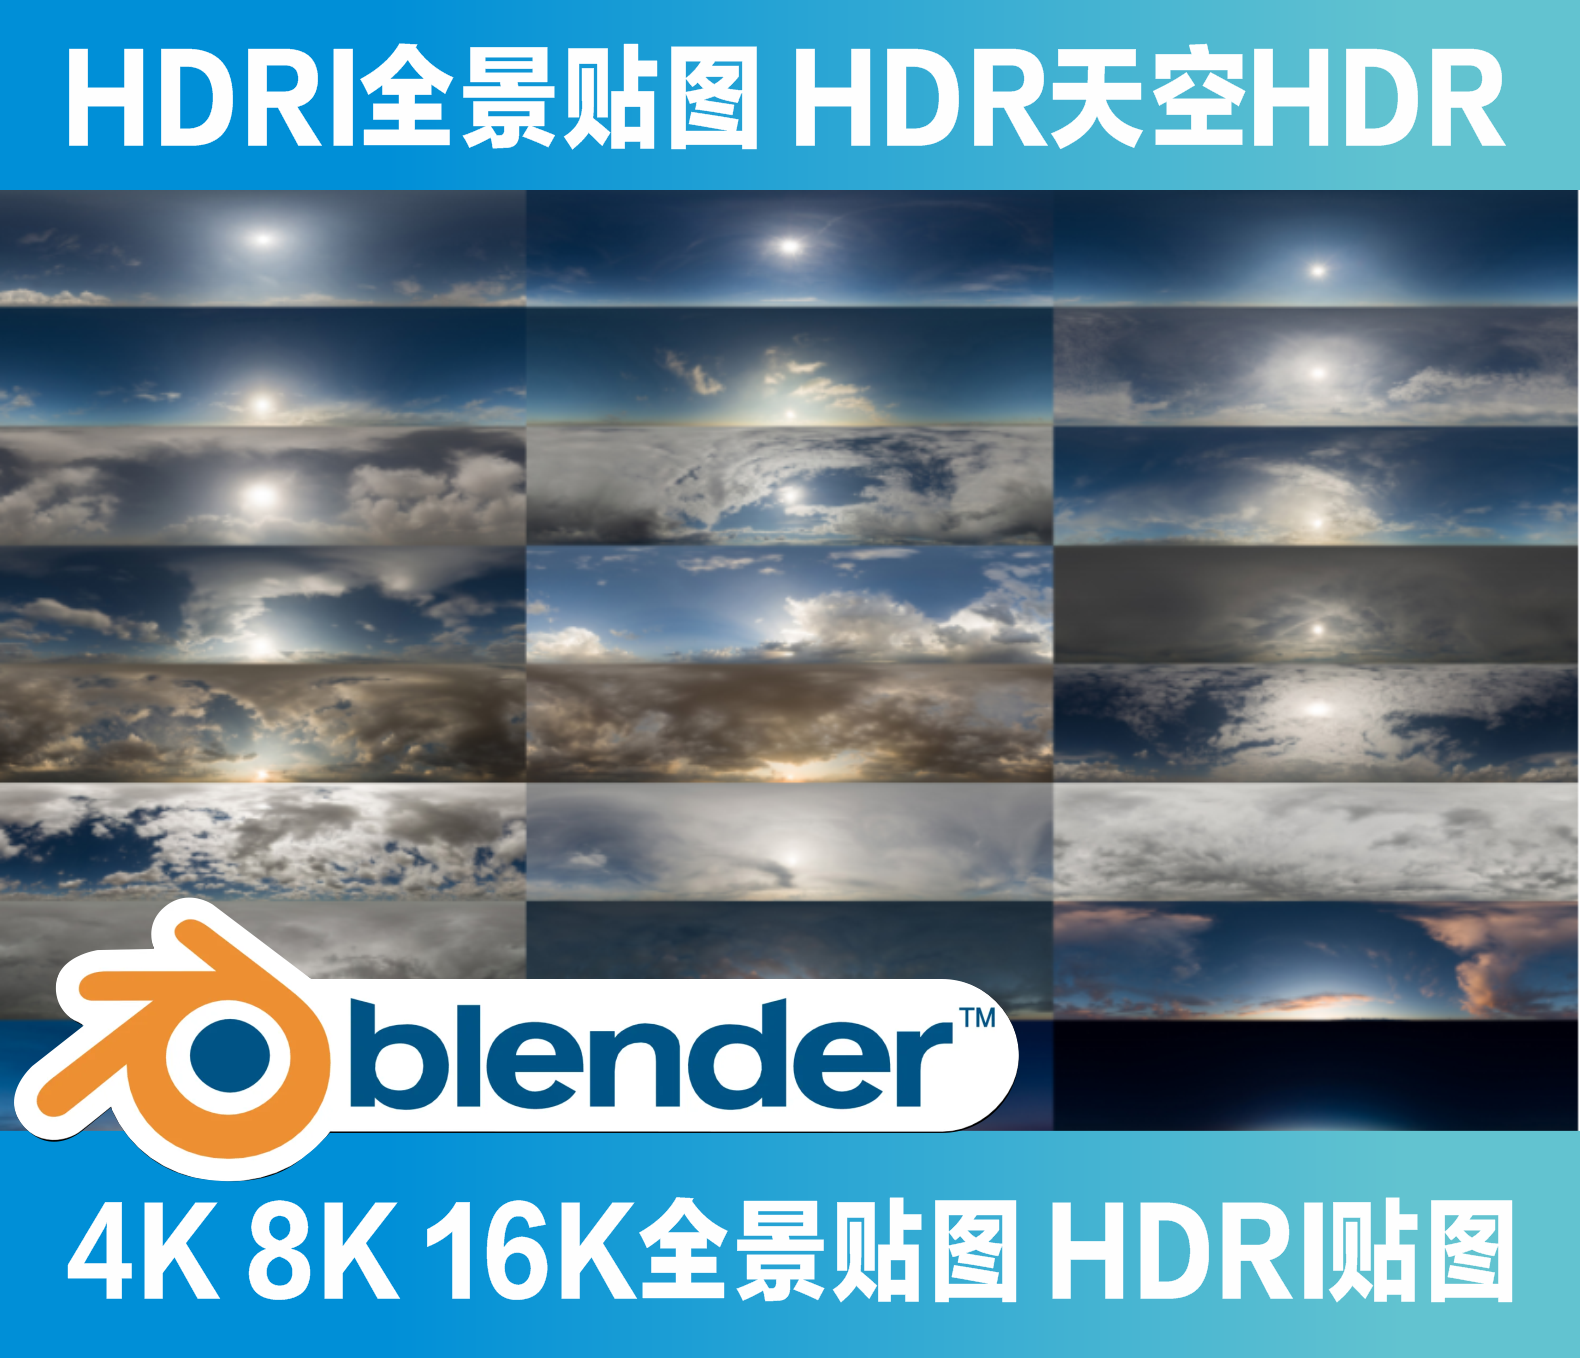 Blender HDRI全景贴图 HDR天空HDR 通用贴图